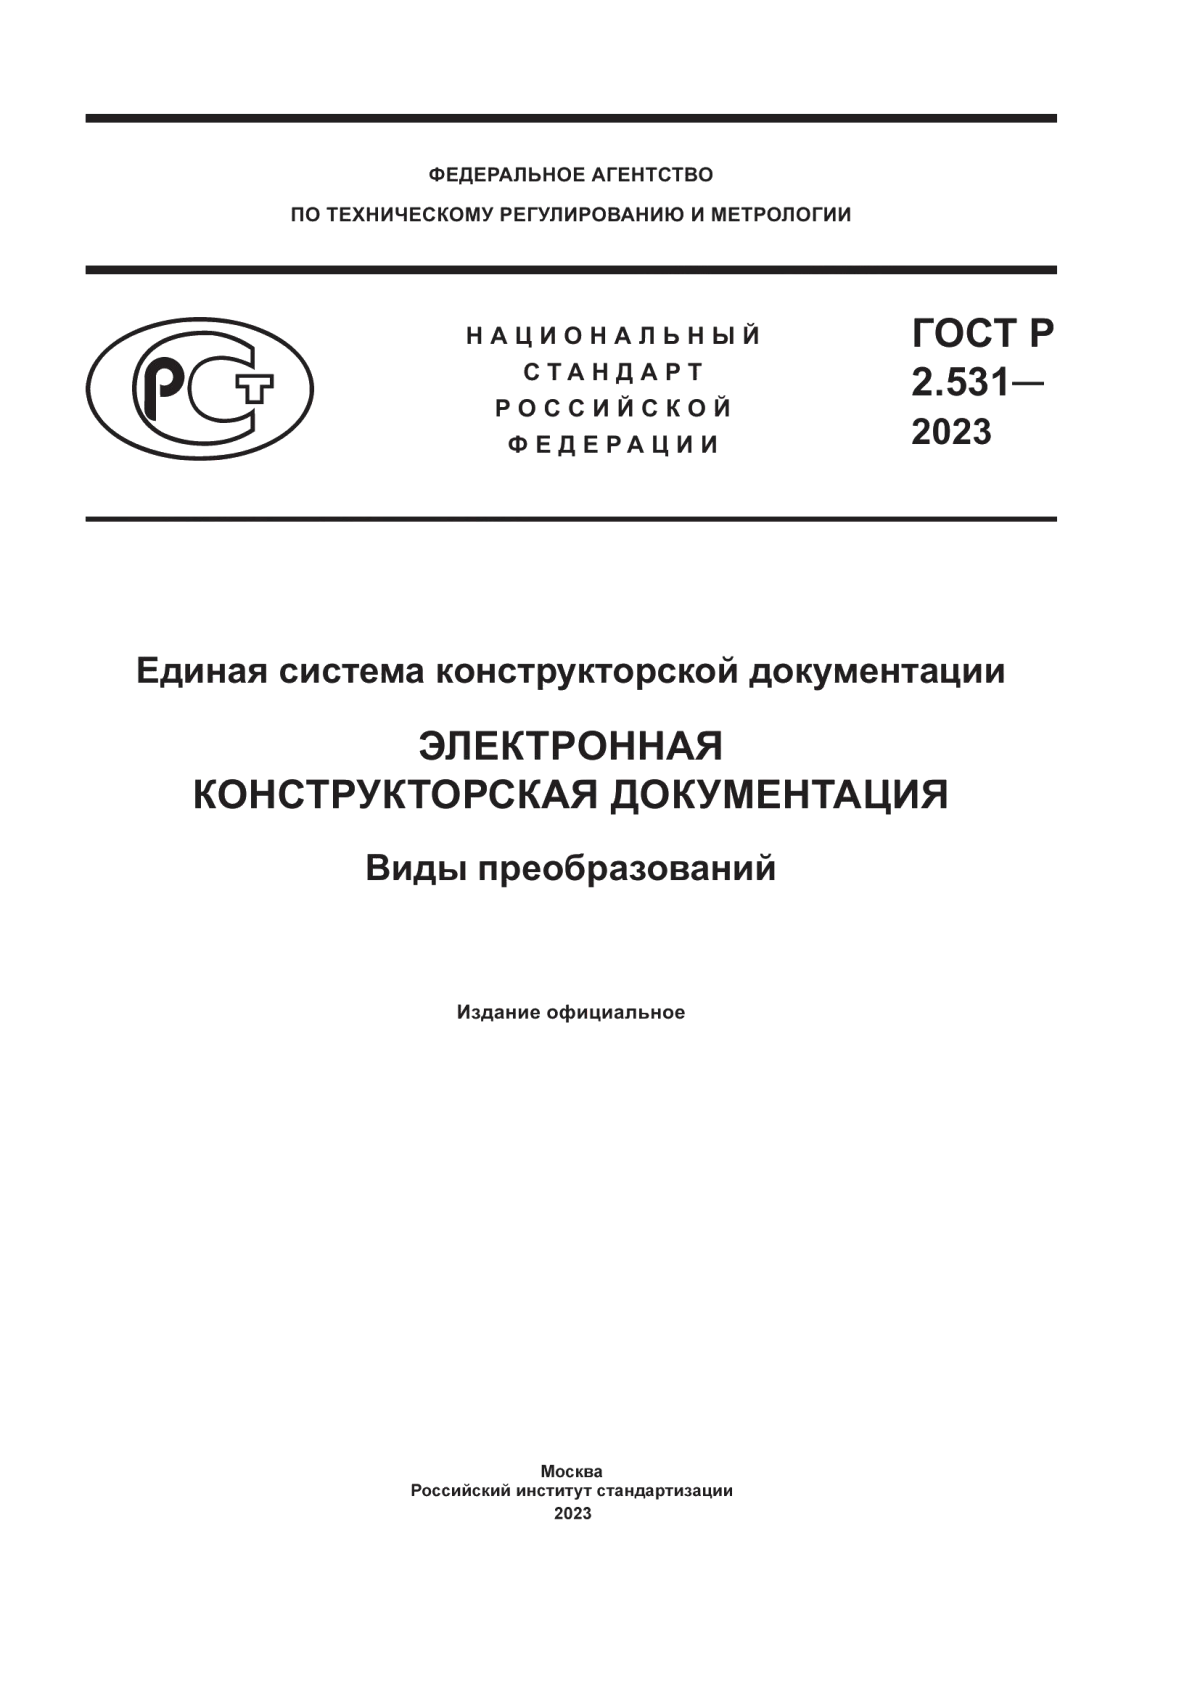 ГОСТ Р 2.531-2023 Единая система конструкторской документации. Электронная конструкторская документация. Виды преобразований